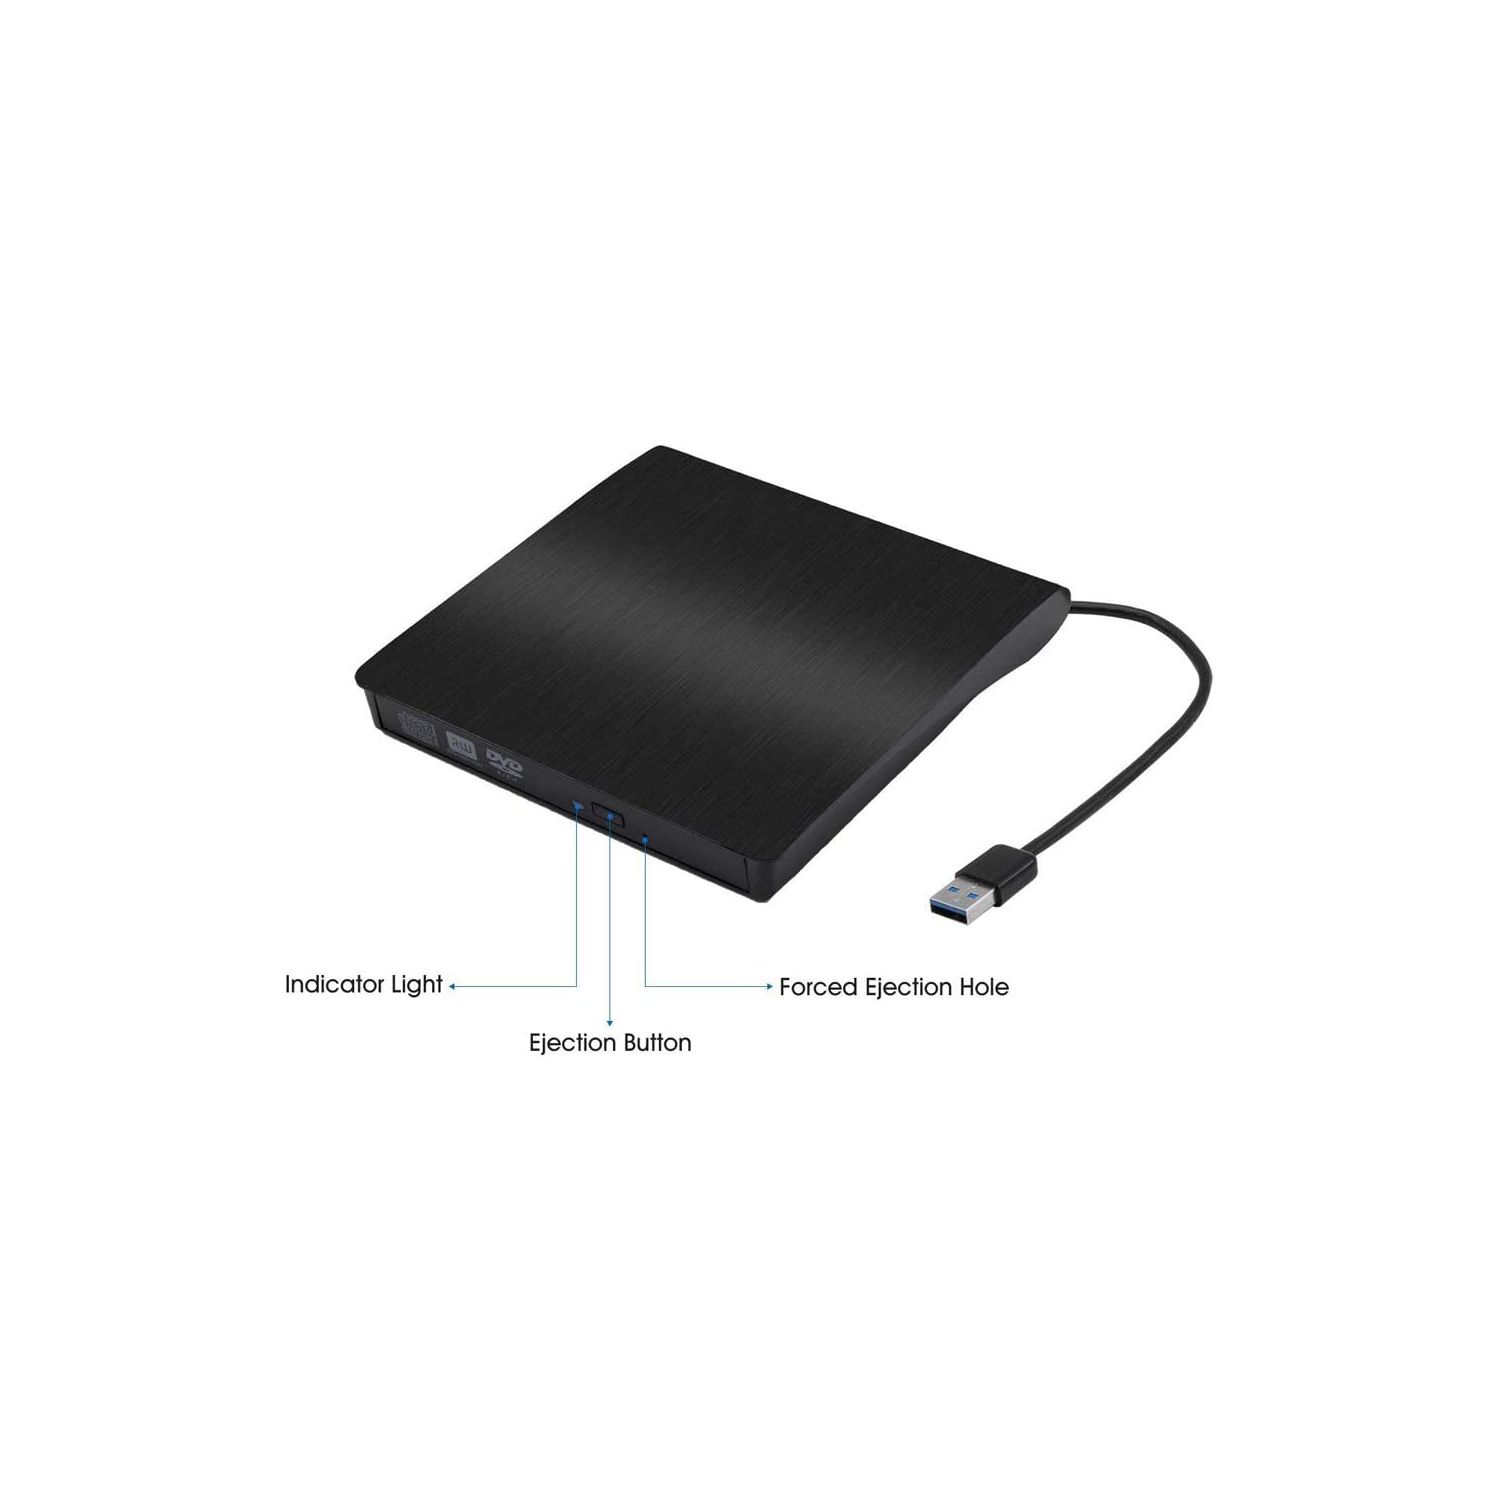 Lecteur de DVD externe pour PC portable à cable USB 3.0 أرخص